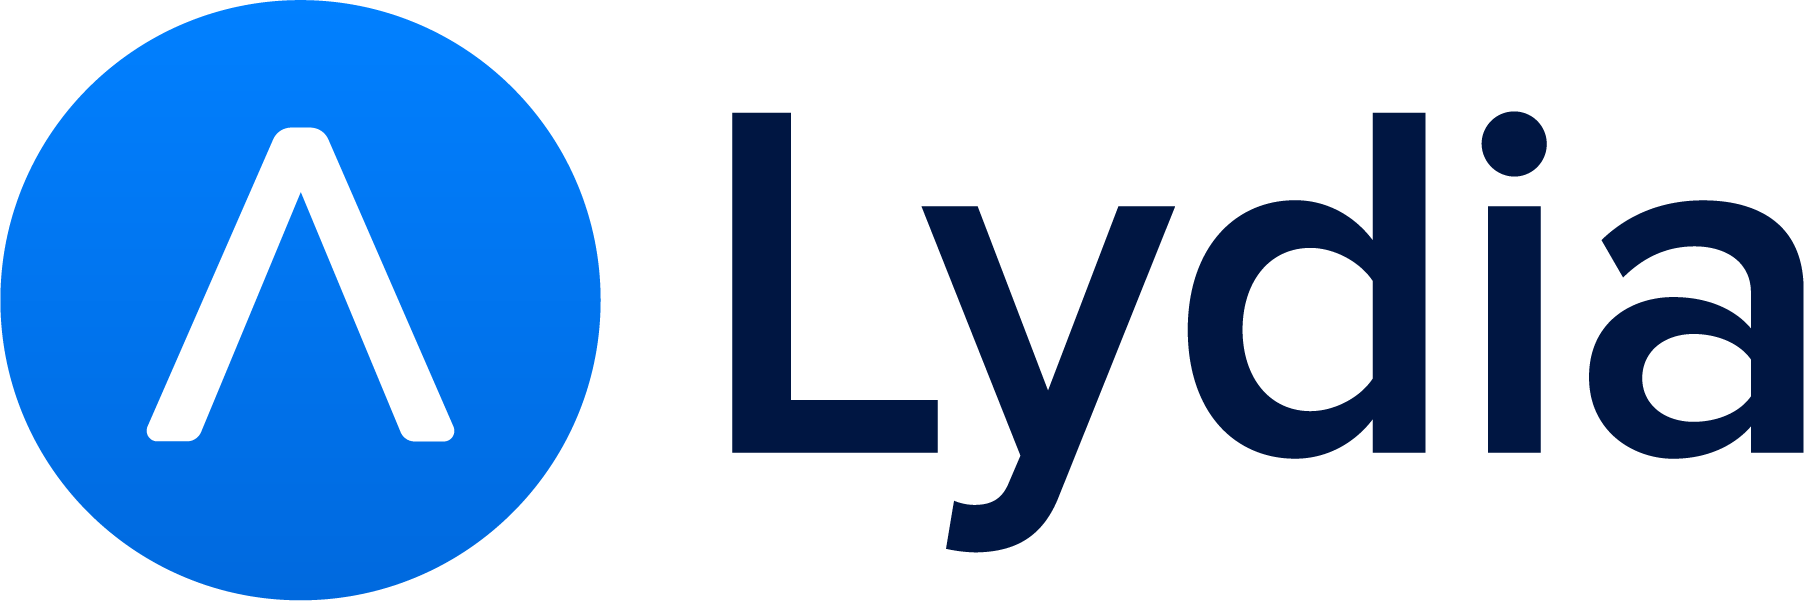 lydia-logo.png